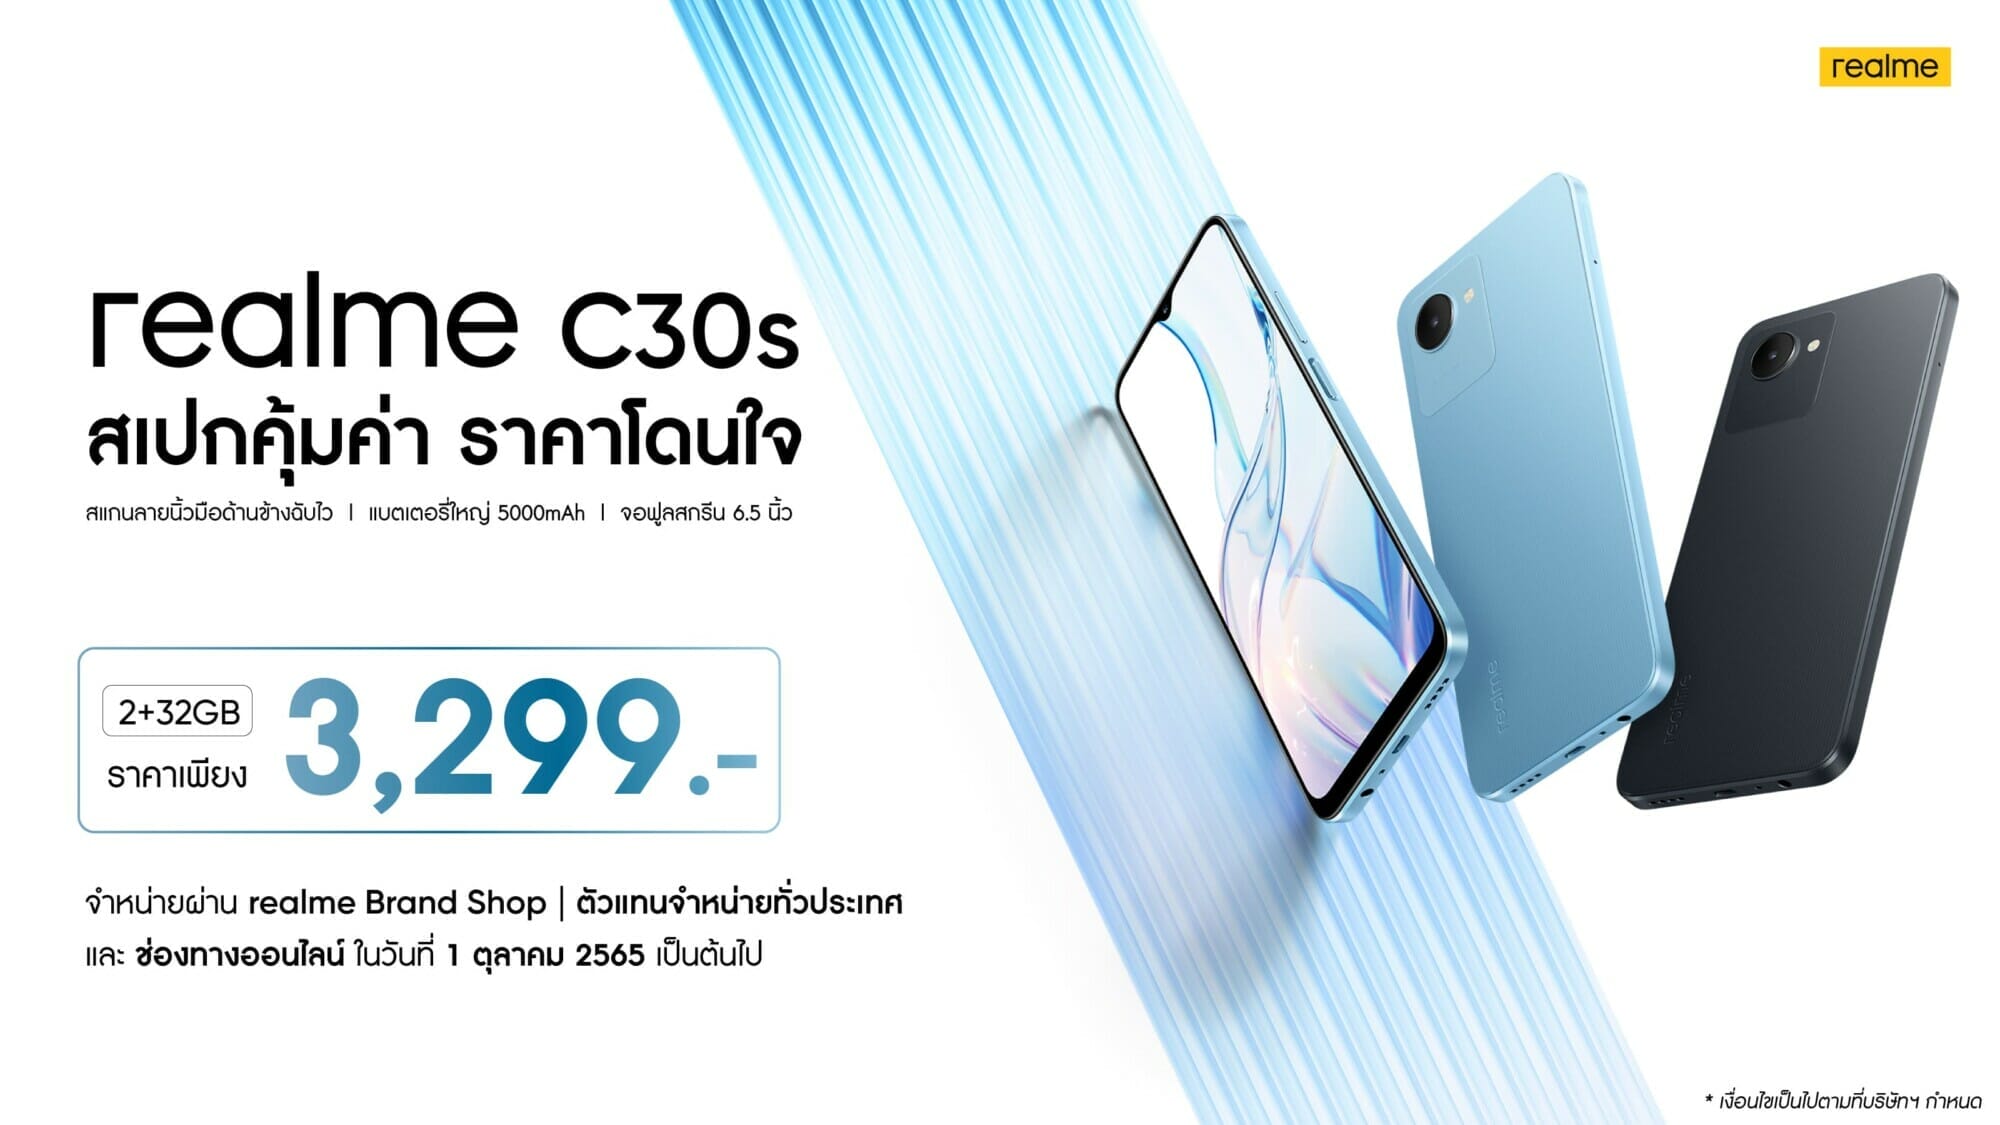 เปิดตัว realme C30s ในไทย Entry-level รุ่นเดียวที่มาพร้อมการสแกนลายนิ้วมือด้านข้าง ราคาสุดคุ้มเพียง 3,299 บาท!